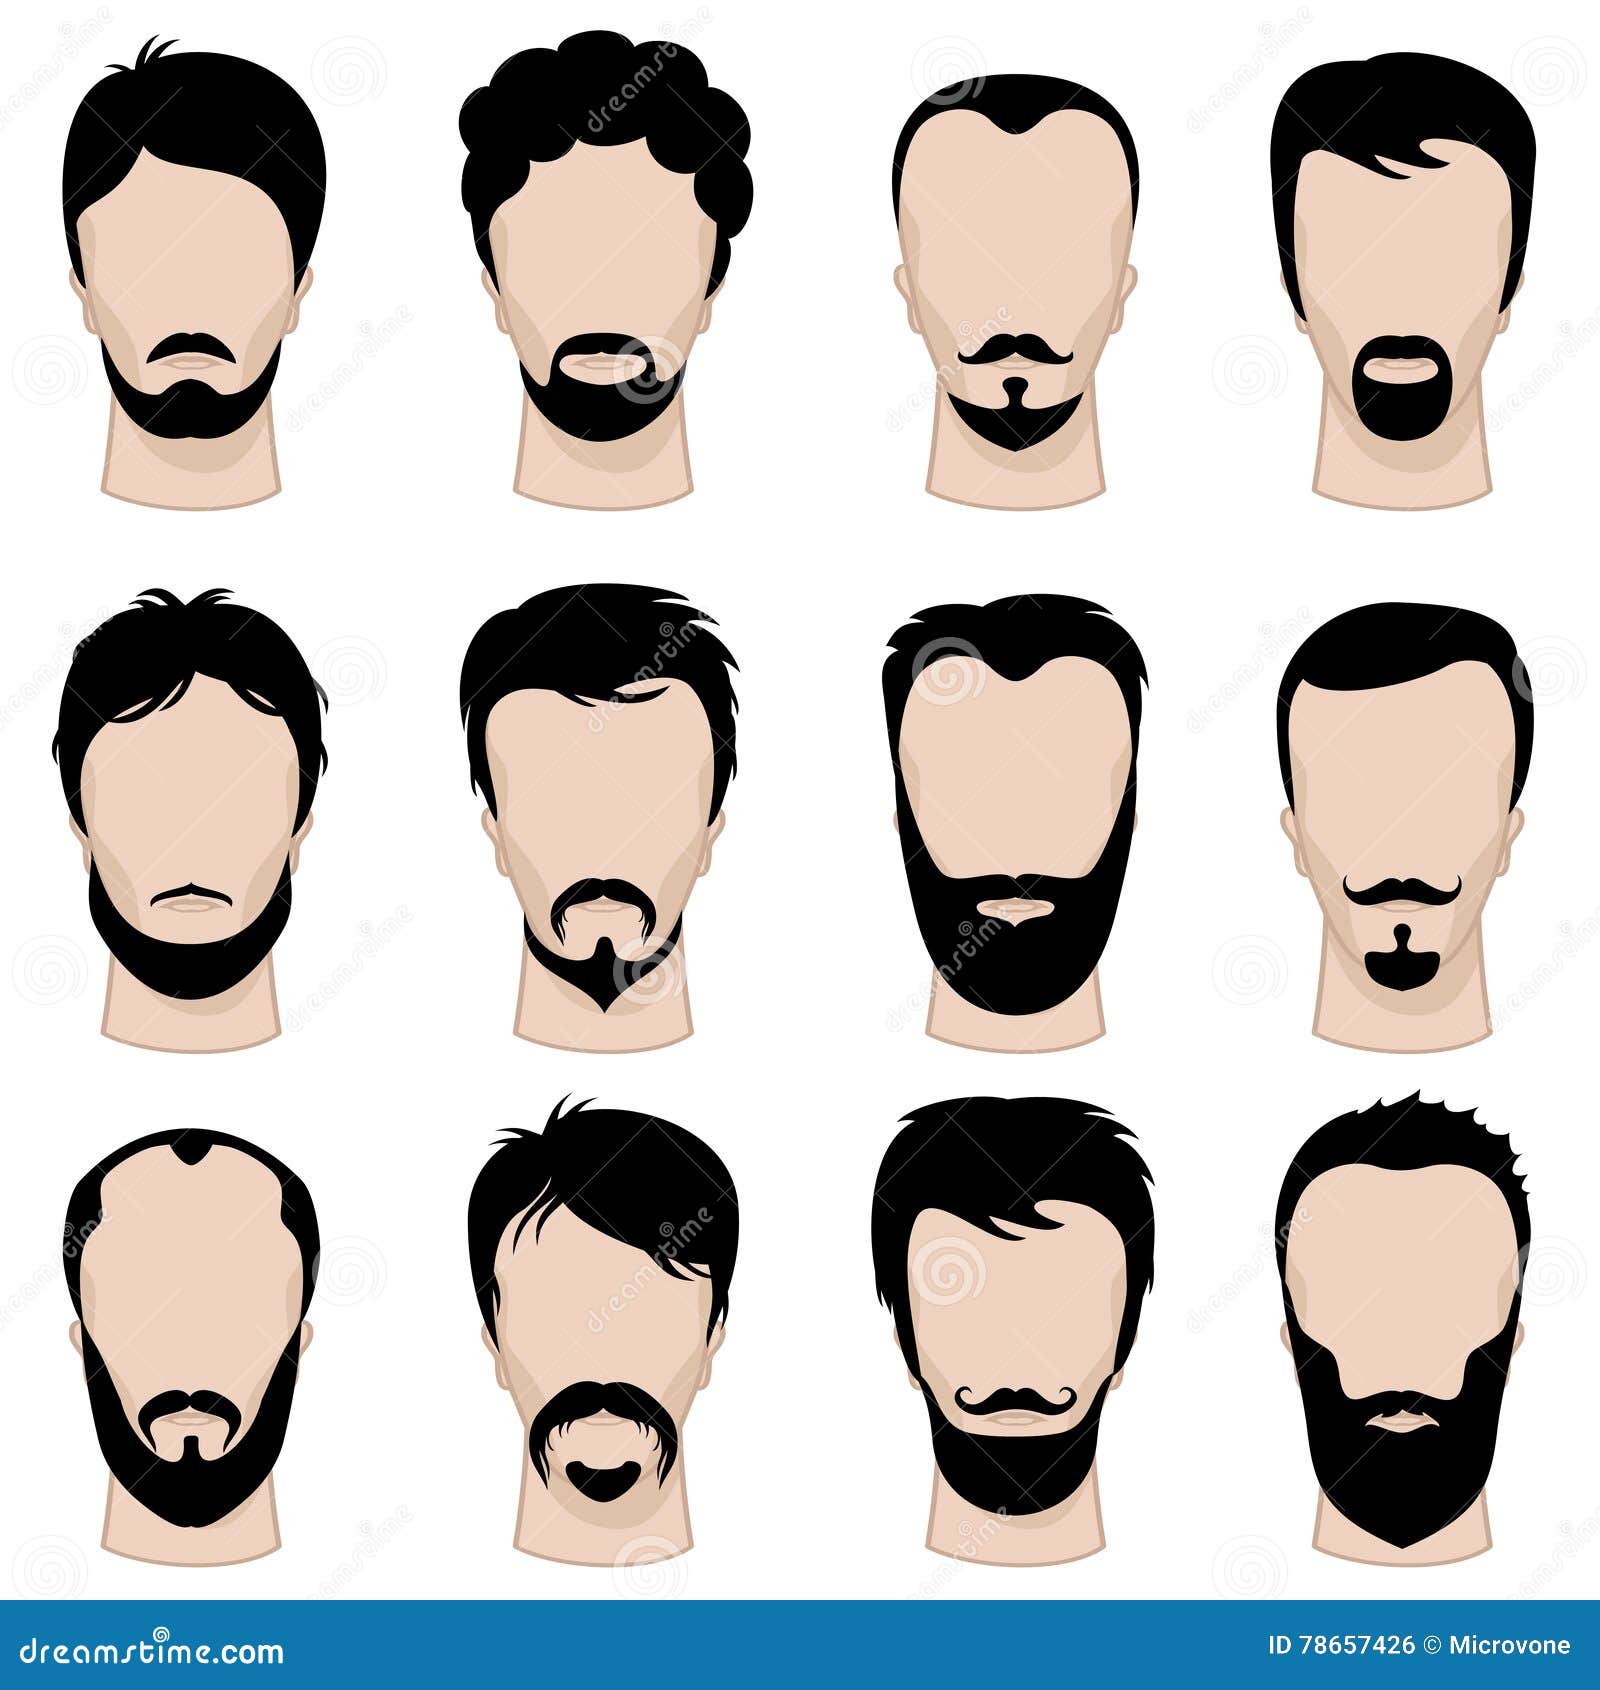 Beard Styles For Men #beard #bearded #barber #beardgang #hairstyle  #hairdesign #hairart #hairtransformation #hair #hairdresser #haircolor... |  Instagram